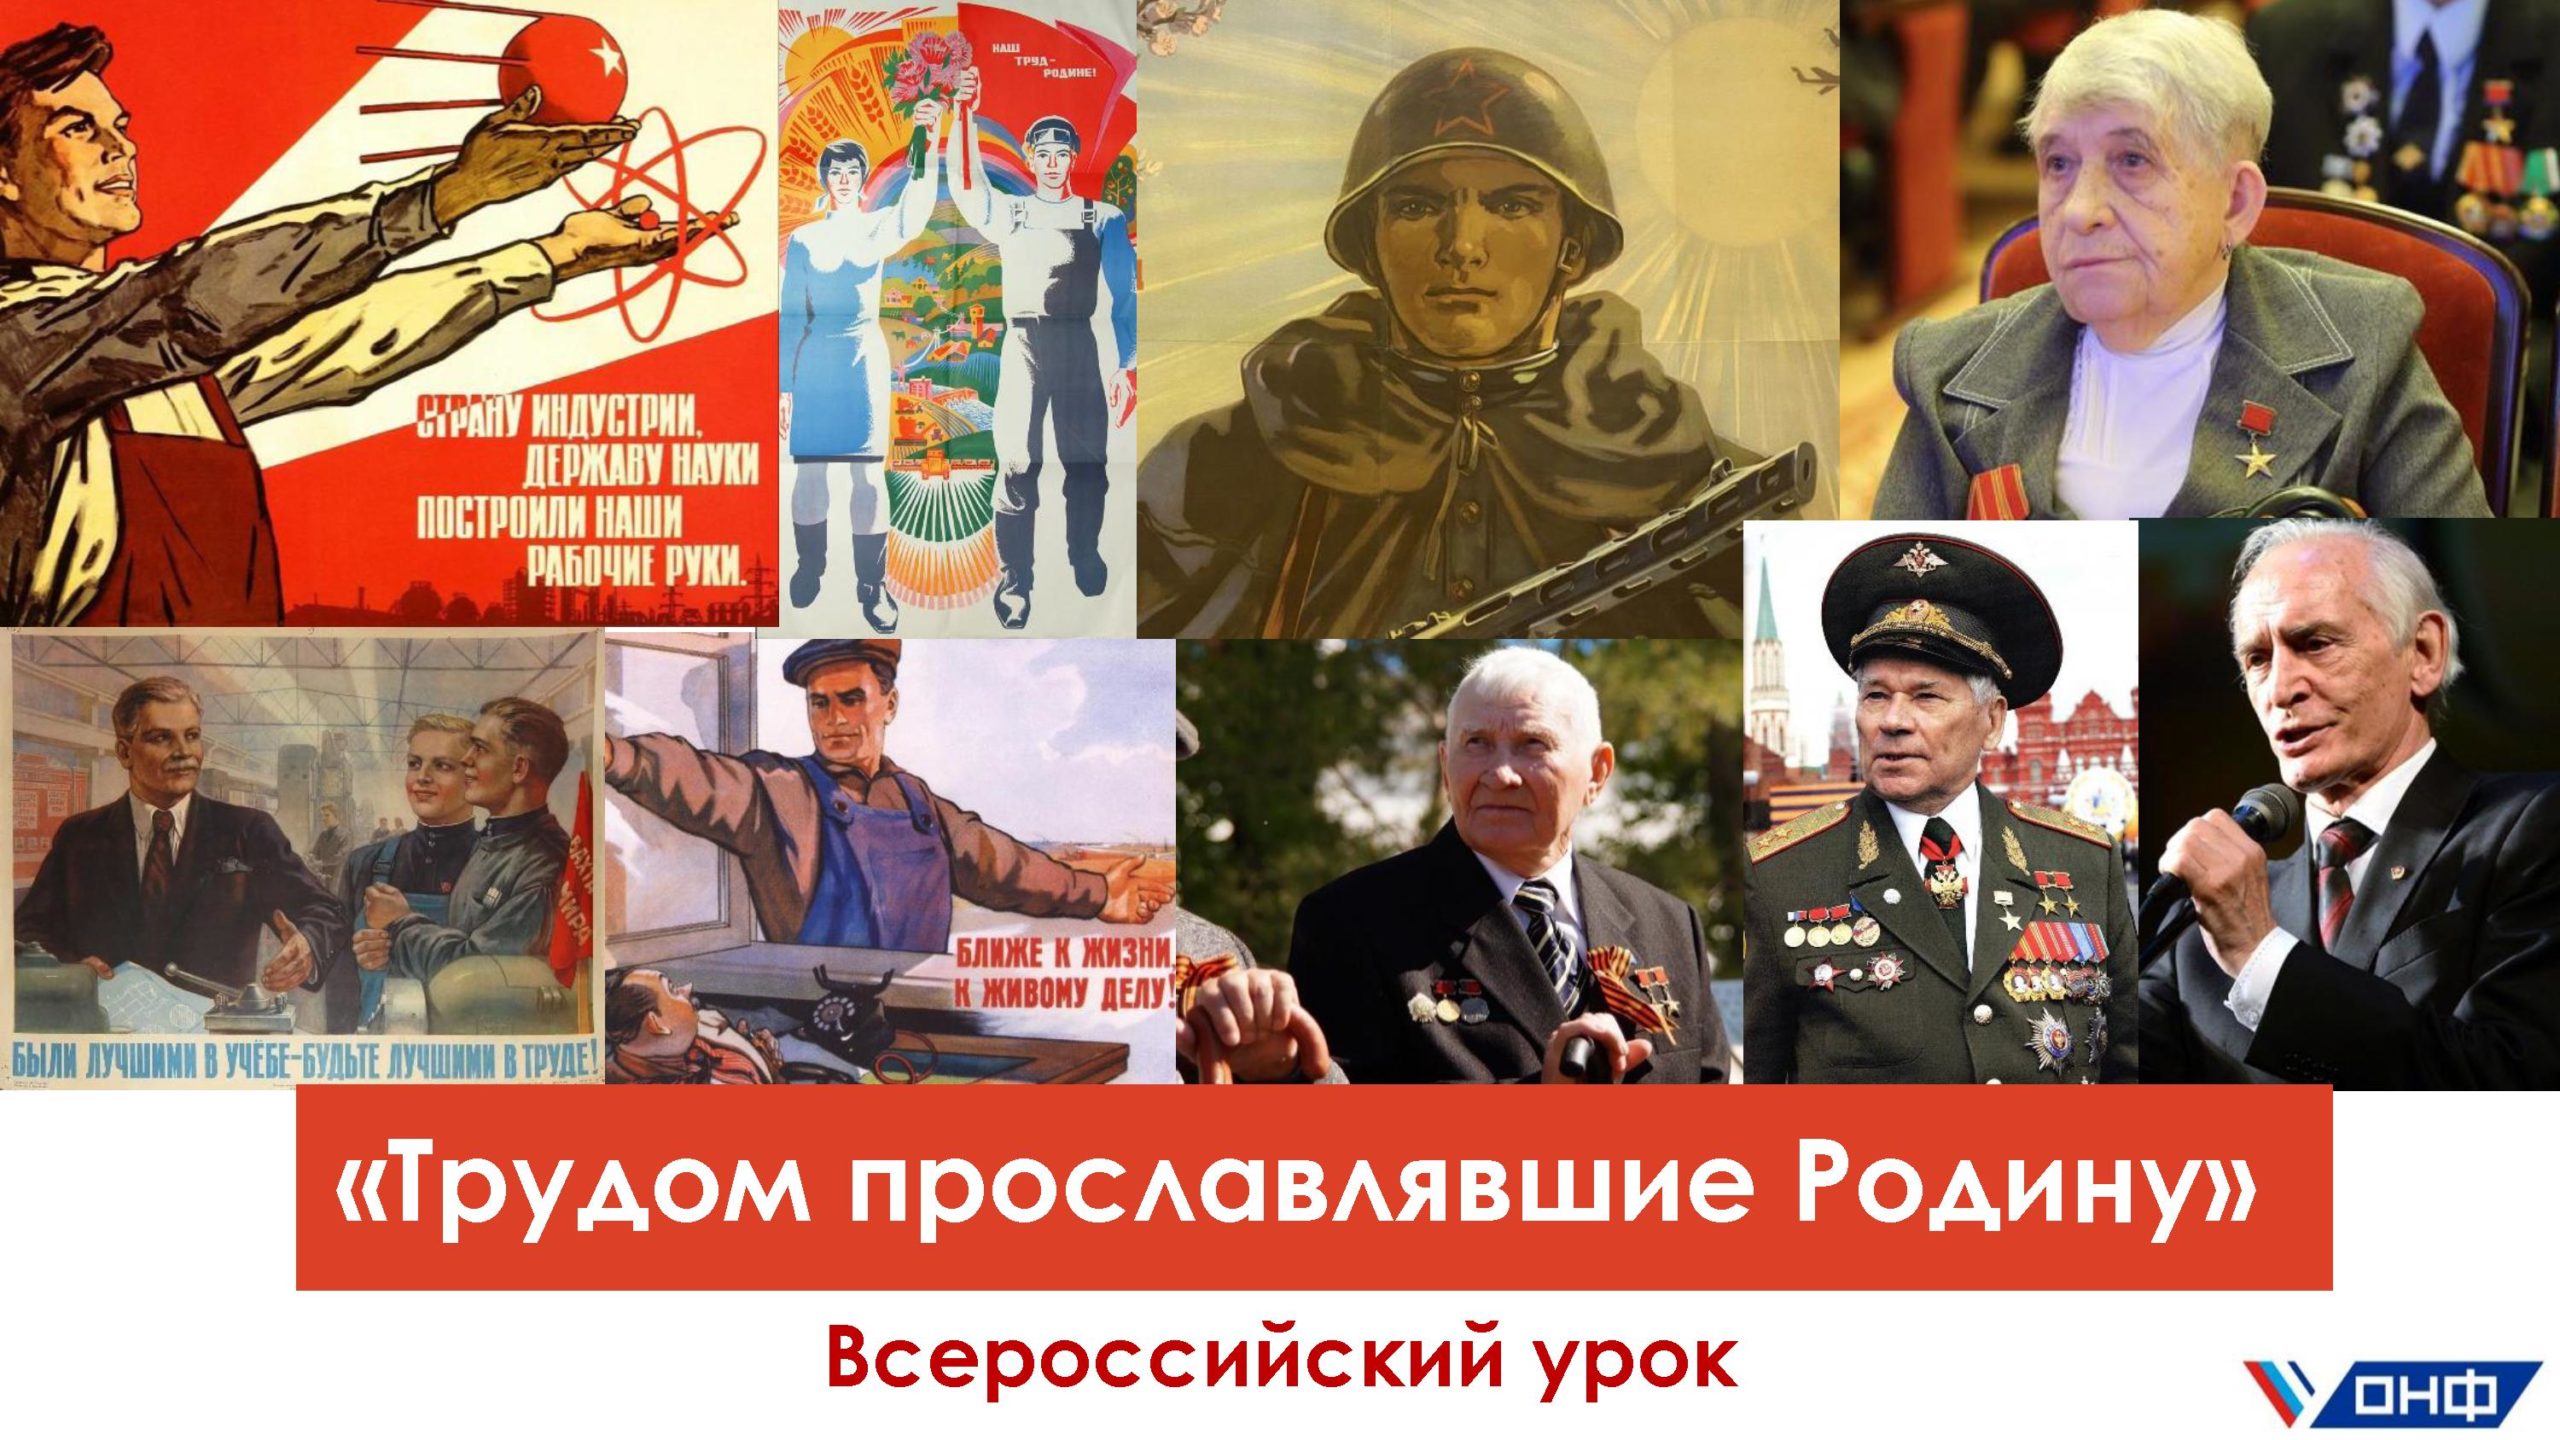 Всероссийский «Урок трудовой доблести» пройдет в техникумах и колледжах Кузбасса 